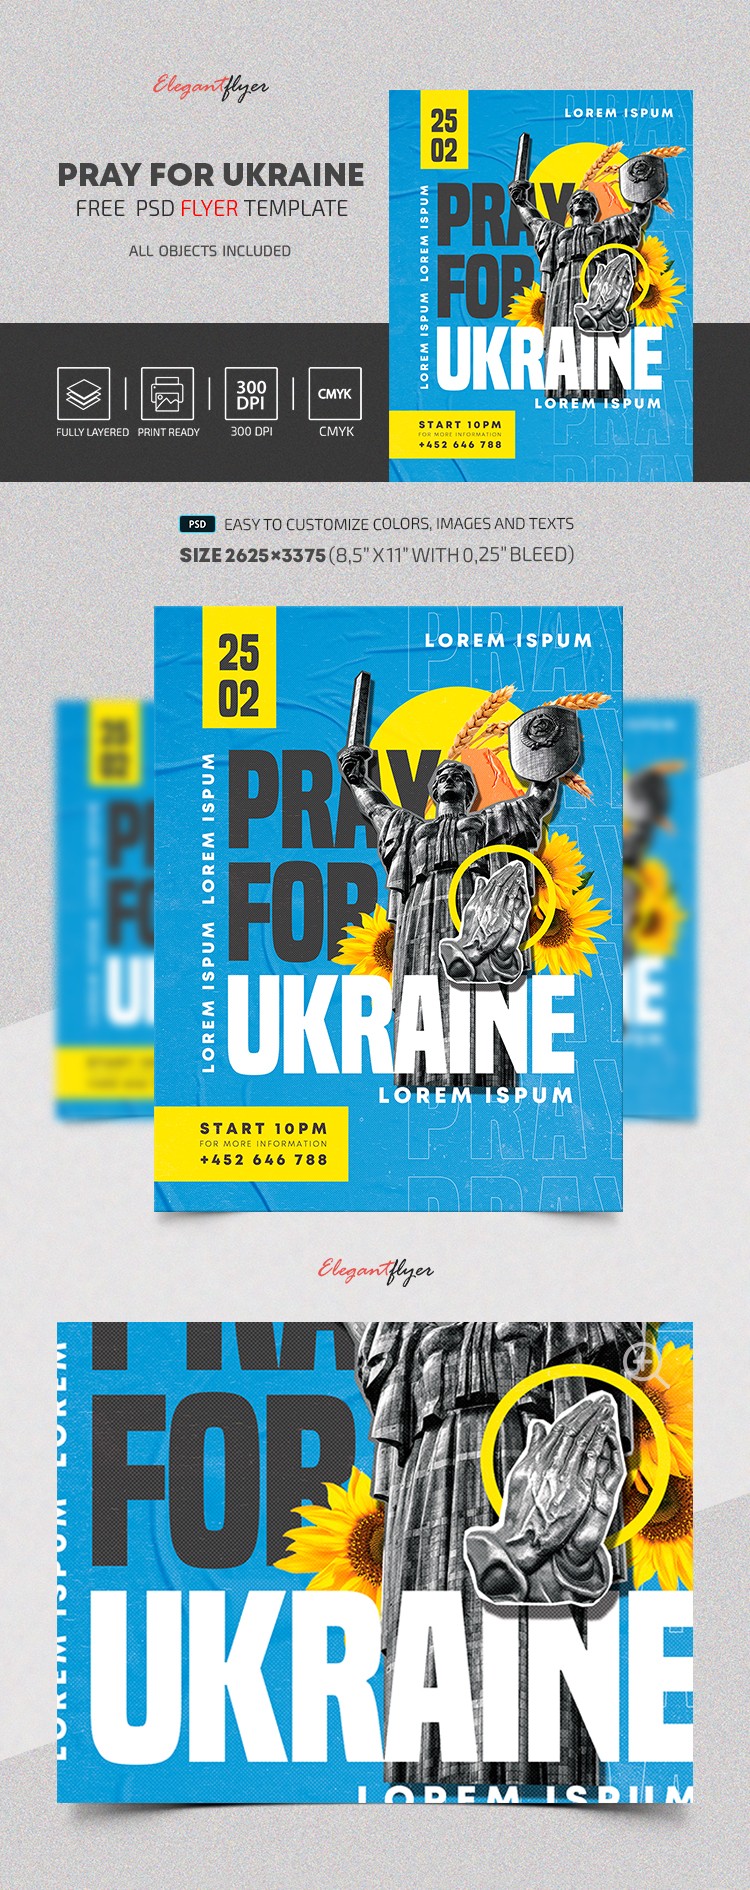 Pray for Ukraine Flyer by ElegantFlyer